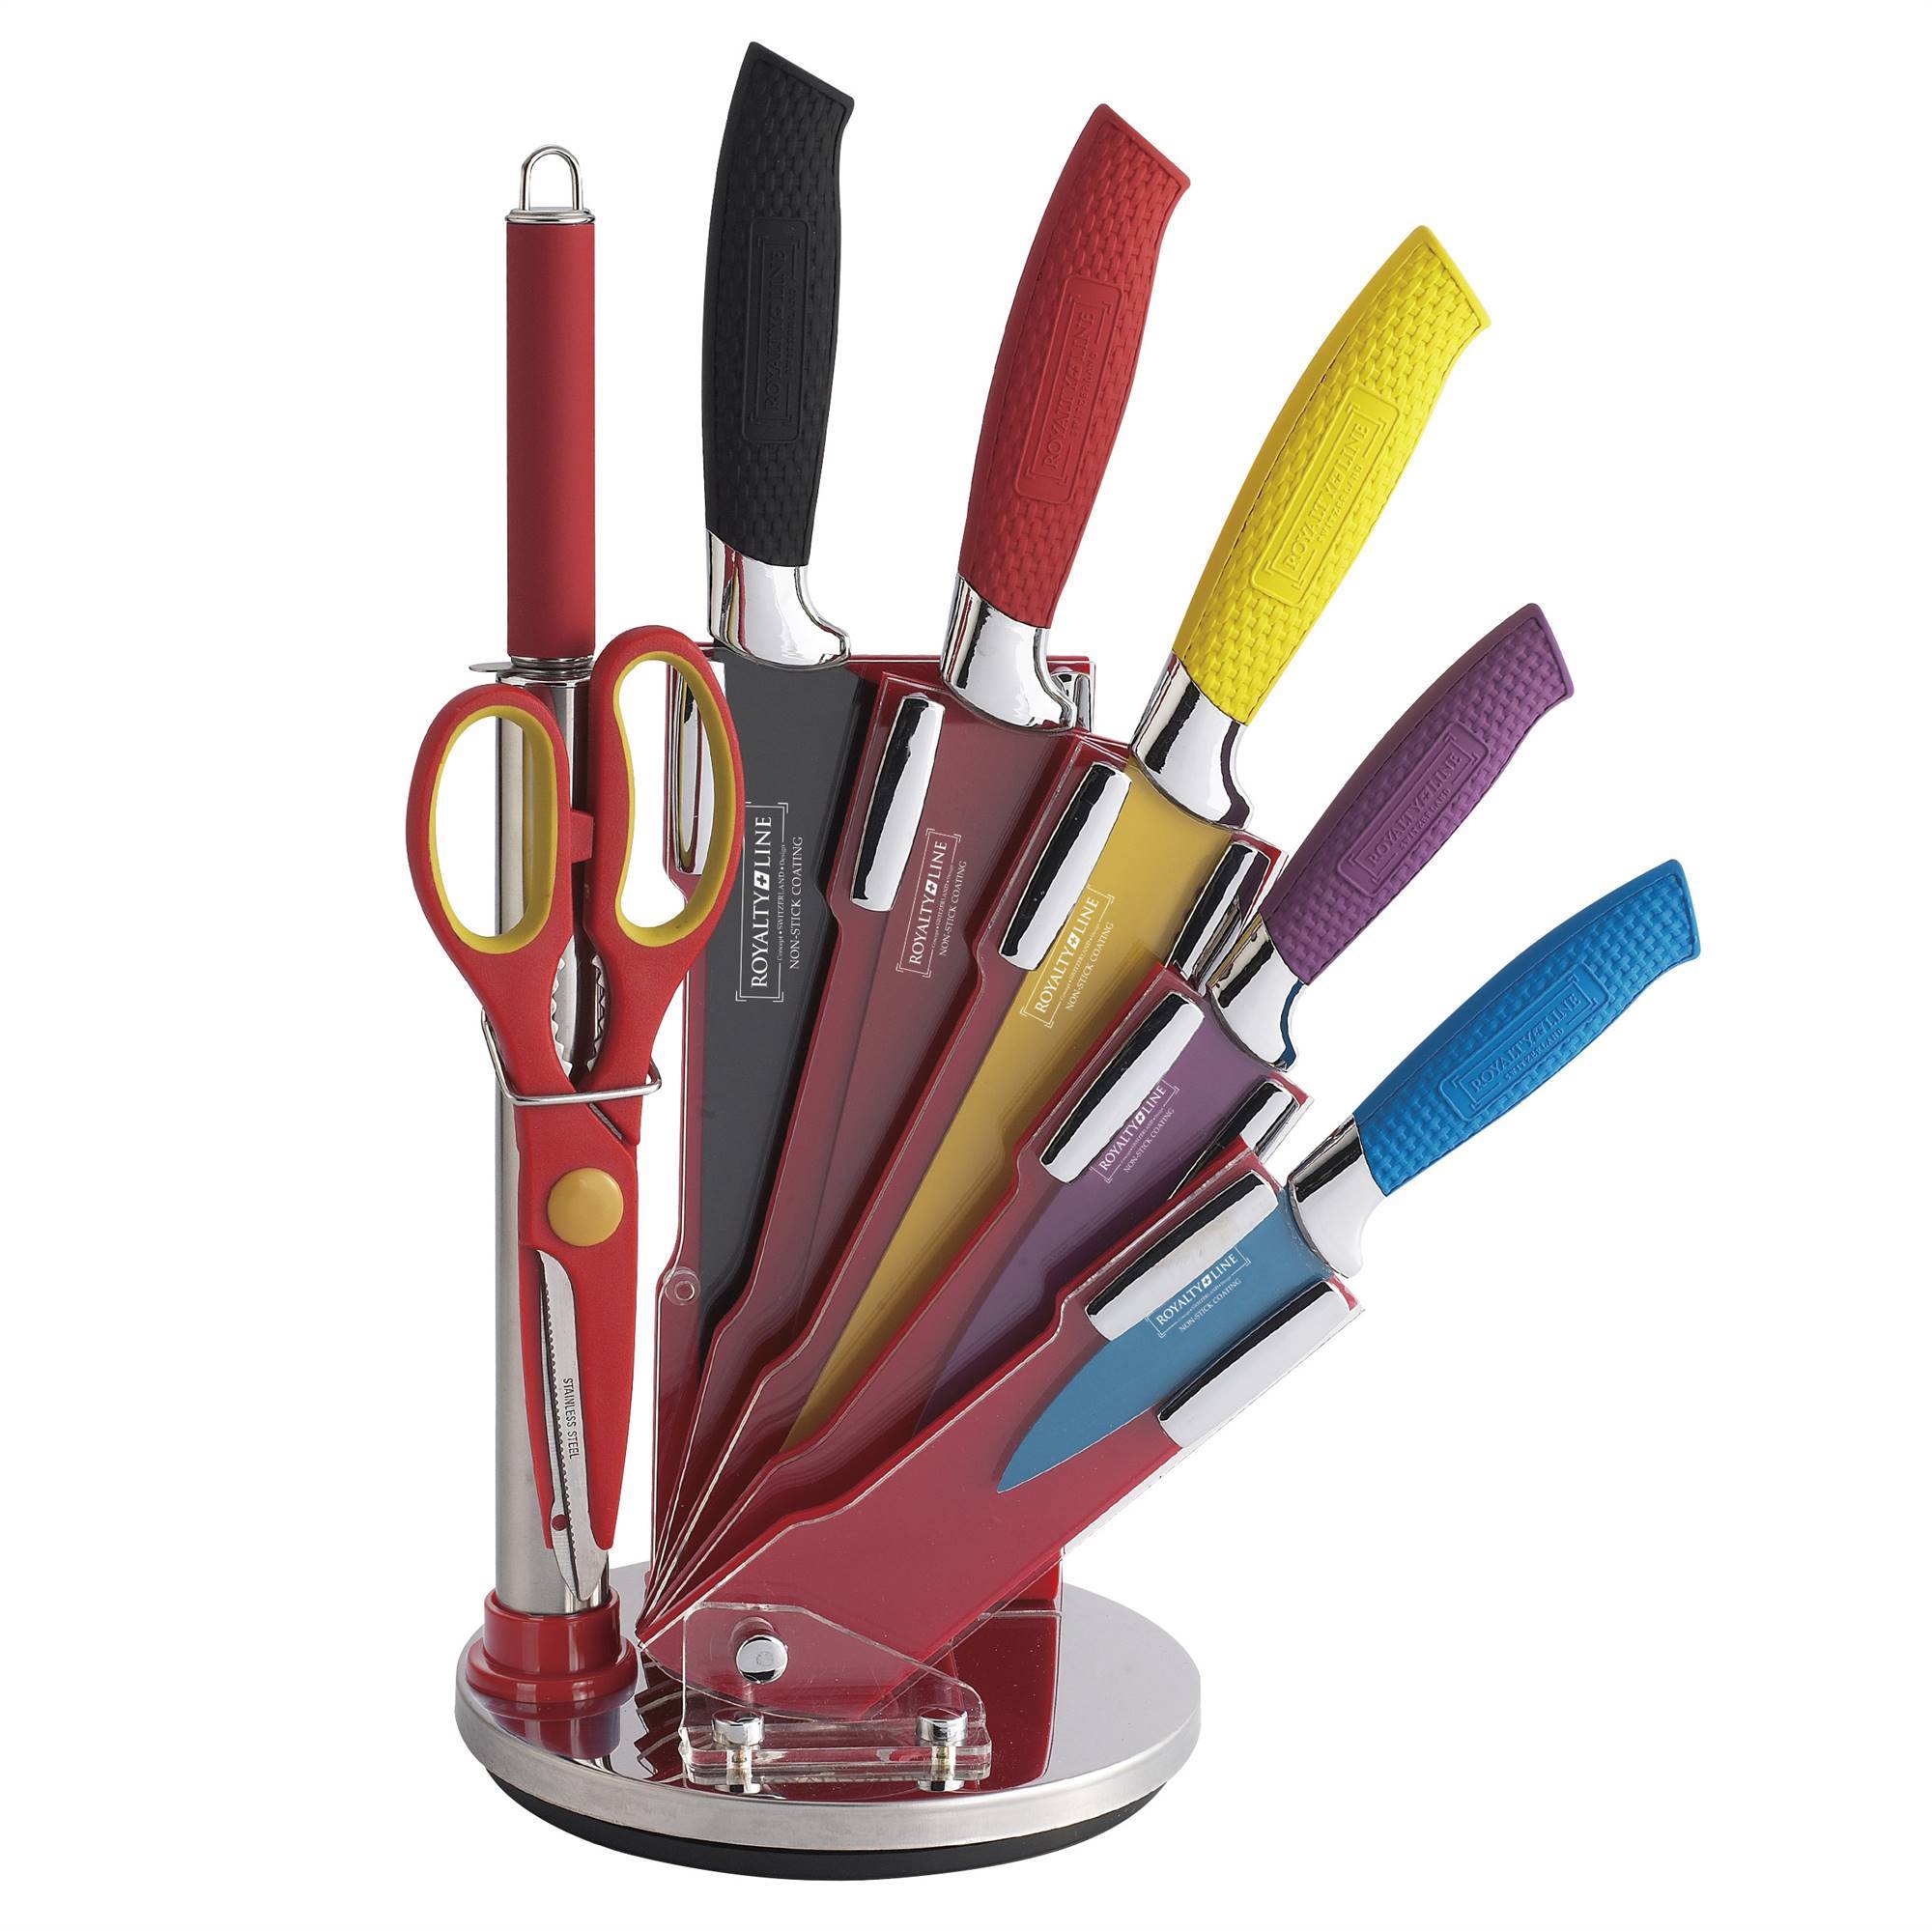 Set de 5 cuchillos y utensilios antiadherentes de cocina de Casa Viva